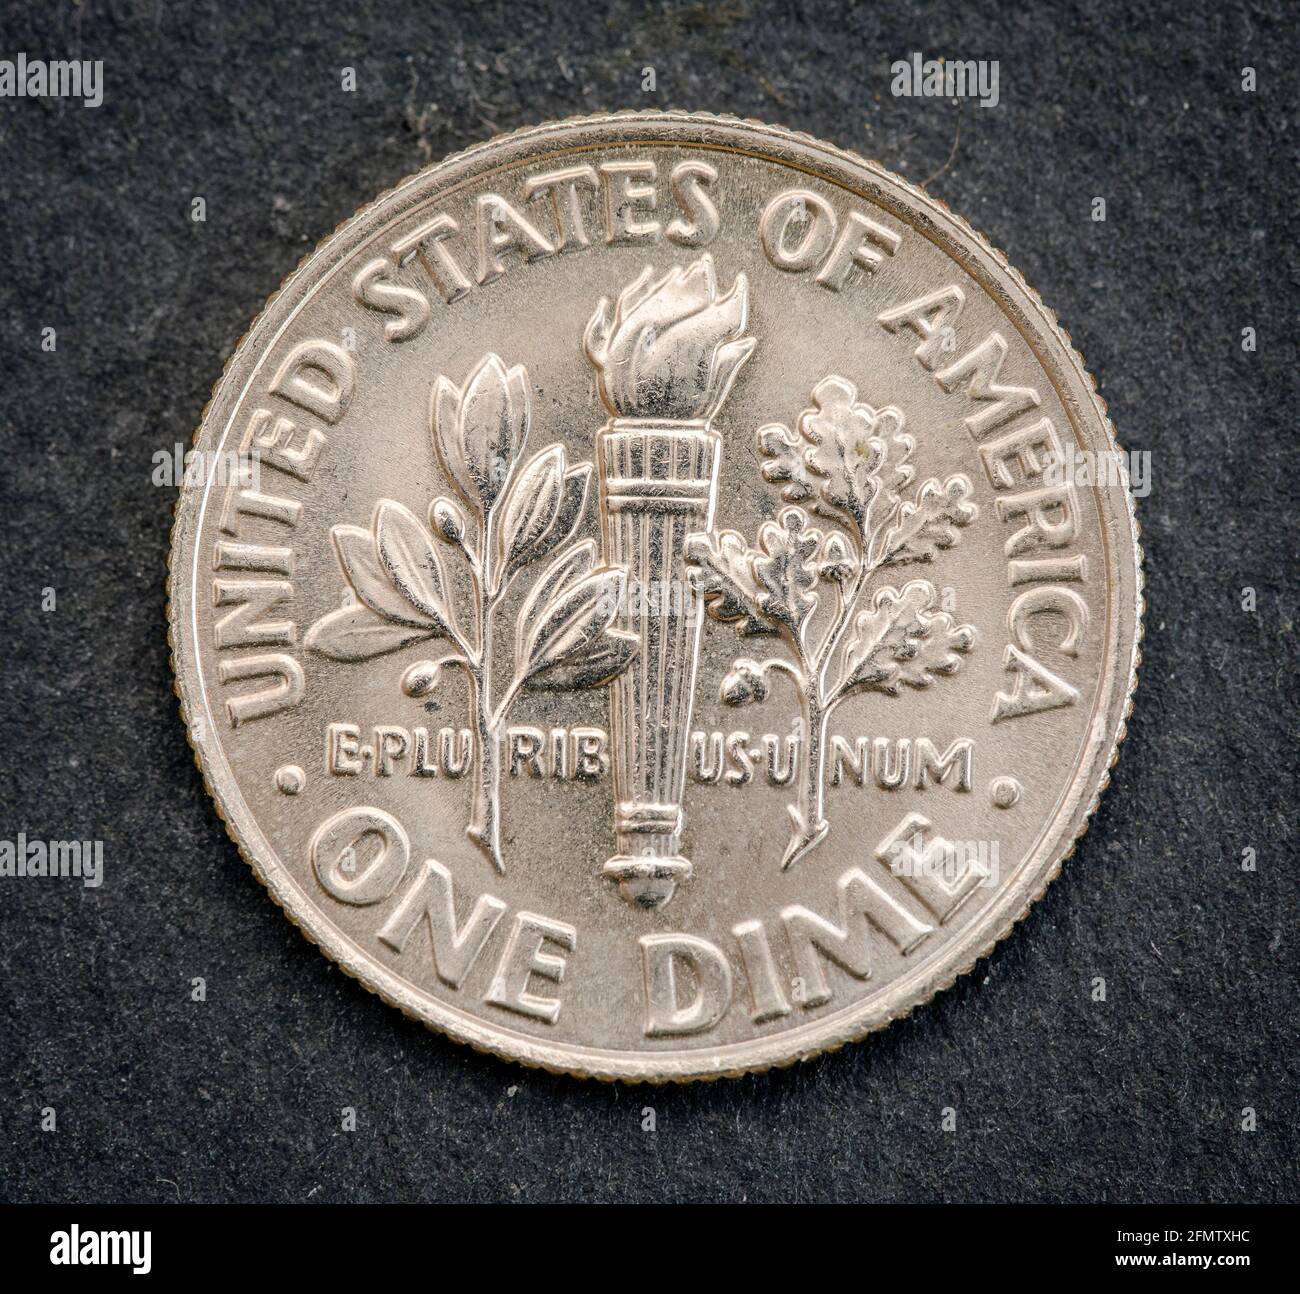 Set di monete commemorative USA, il valore nominale di 1 dime, da 1998. Isolare Foto Stock